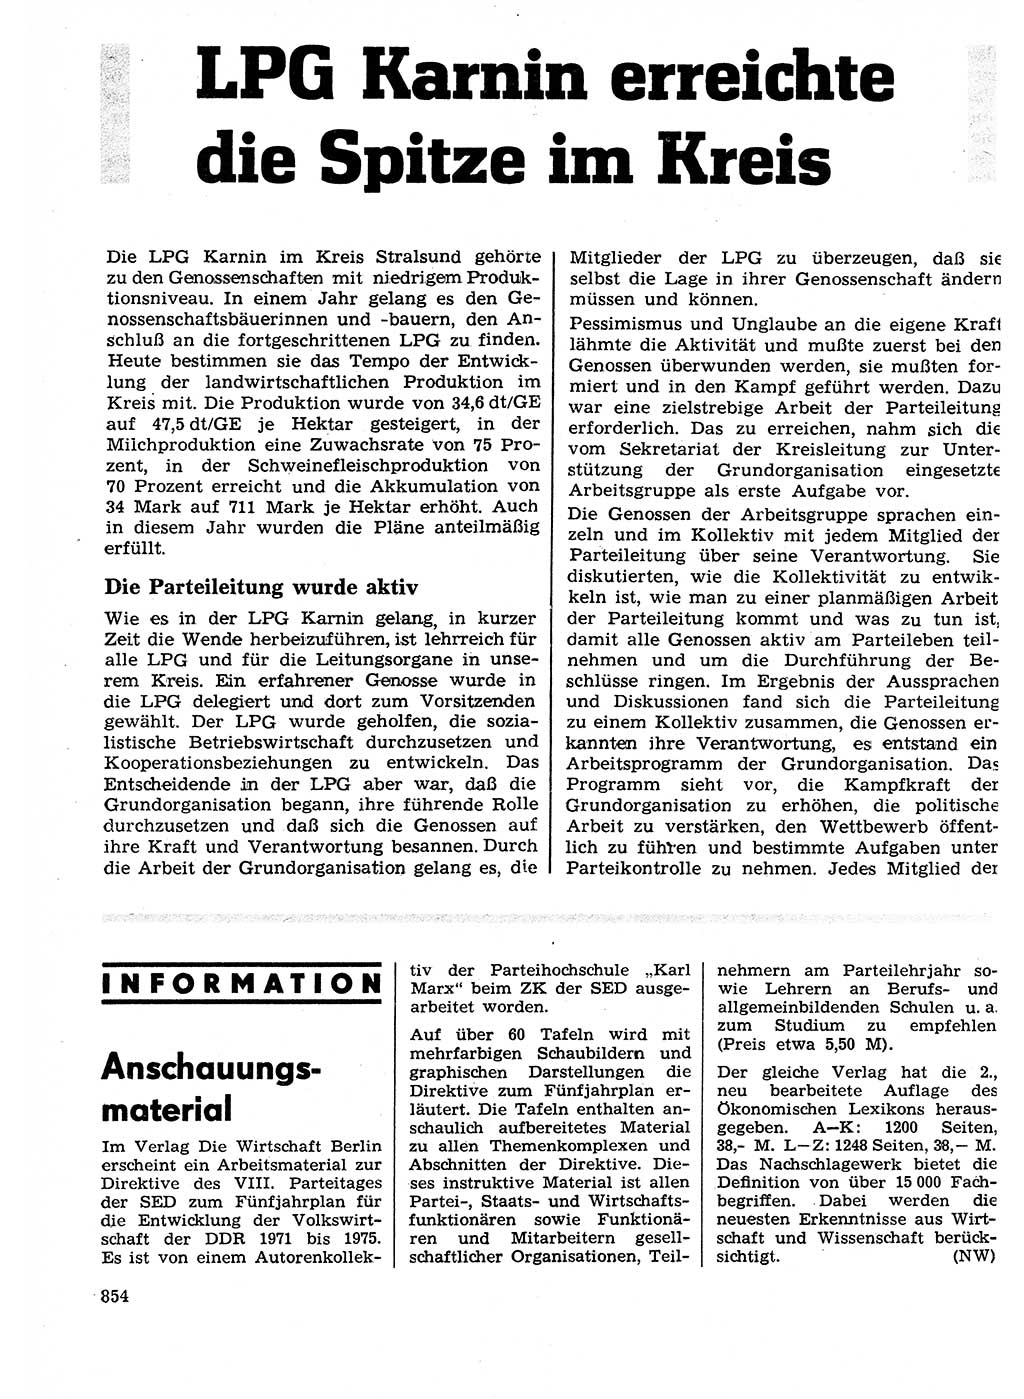 Neuer Weg (NW), Organ des Zentralkomitees (ZK) der SED (Sozialistische Einheitspartei Deutschlands) für Fragen des Parteilebens, 26. Jahrgang [Deutsche Demokratische Republik (DDR)] 1971, Seite 854 (NW ZK SED DDR 1971, S. 854)